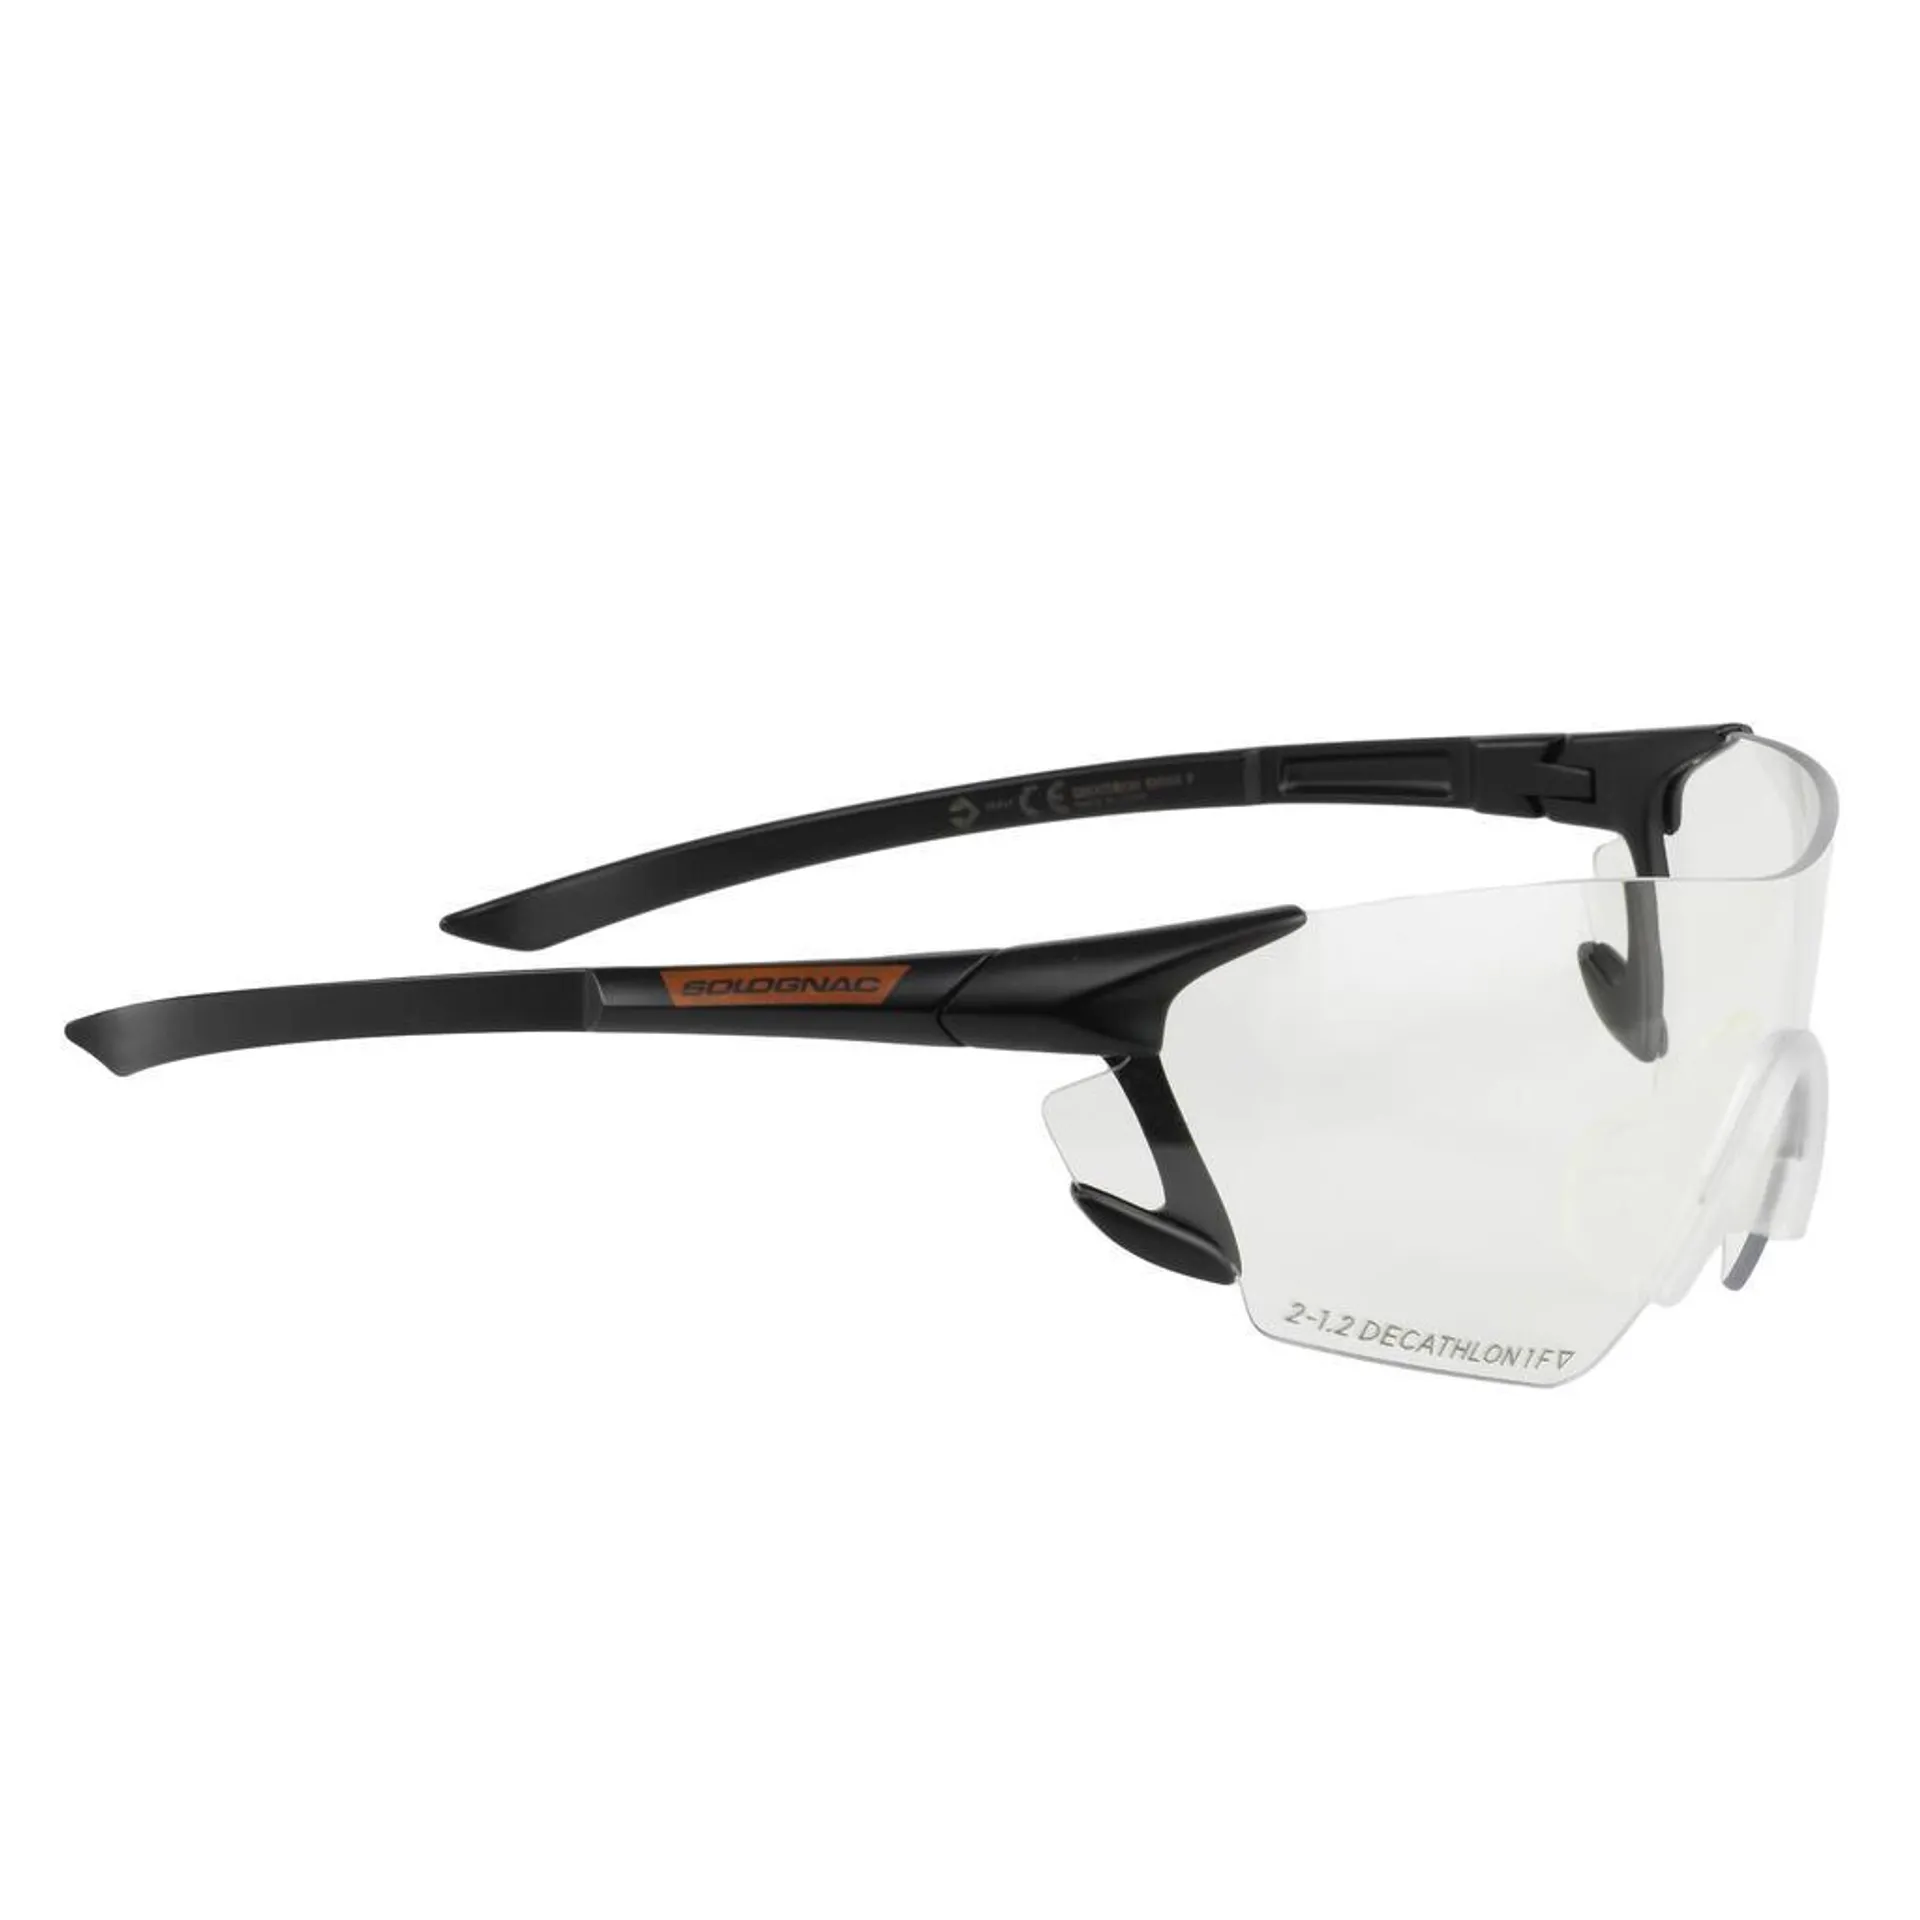 Ochranné okuliare na športovú streľbu a poľovačku s čírym sklom